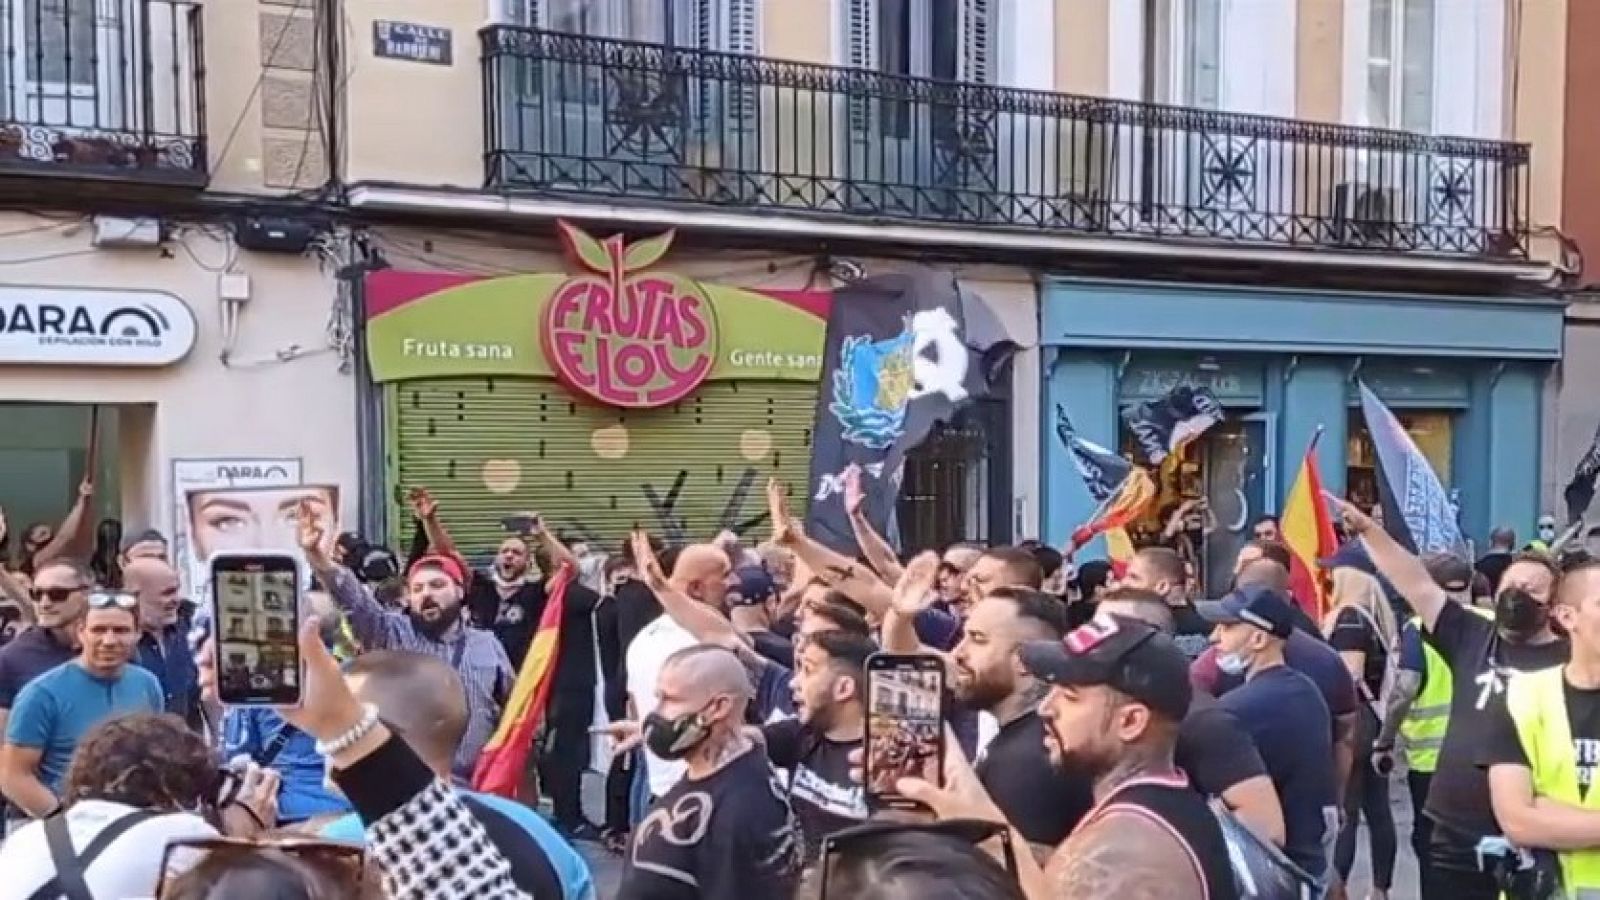 La manifestación homófoba de Chueca desata una nueva batalla política